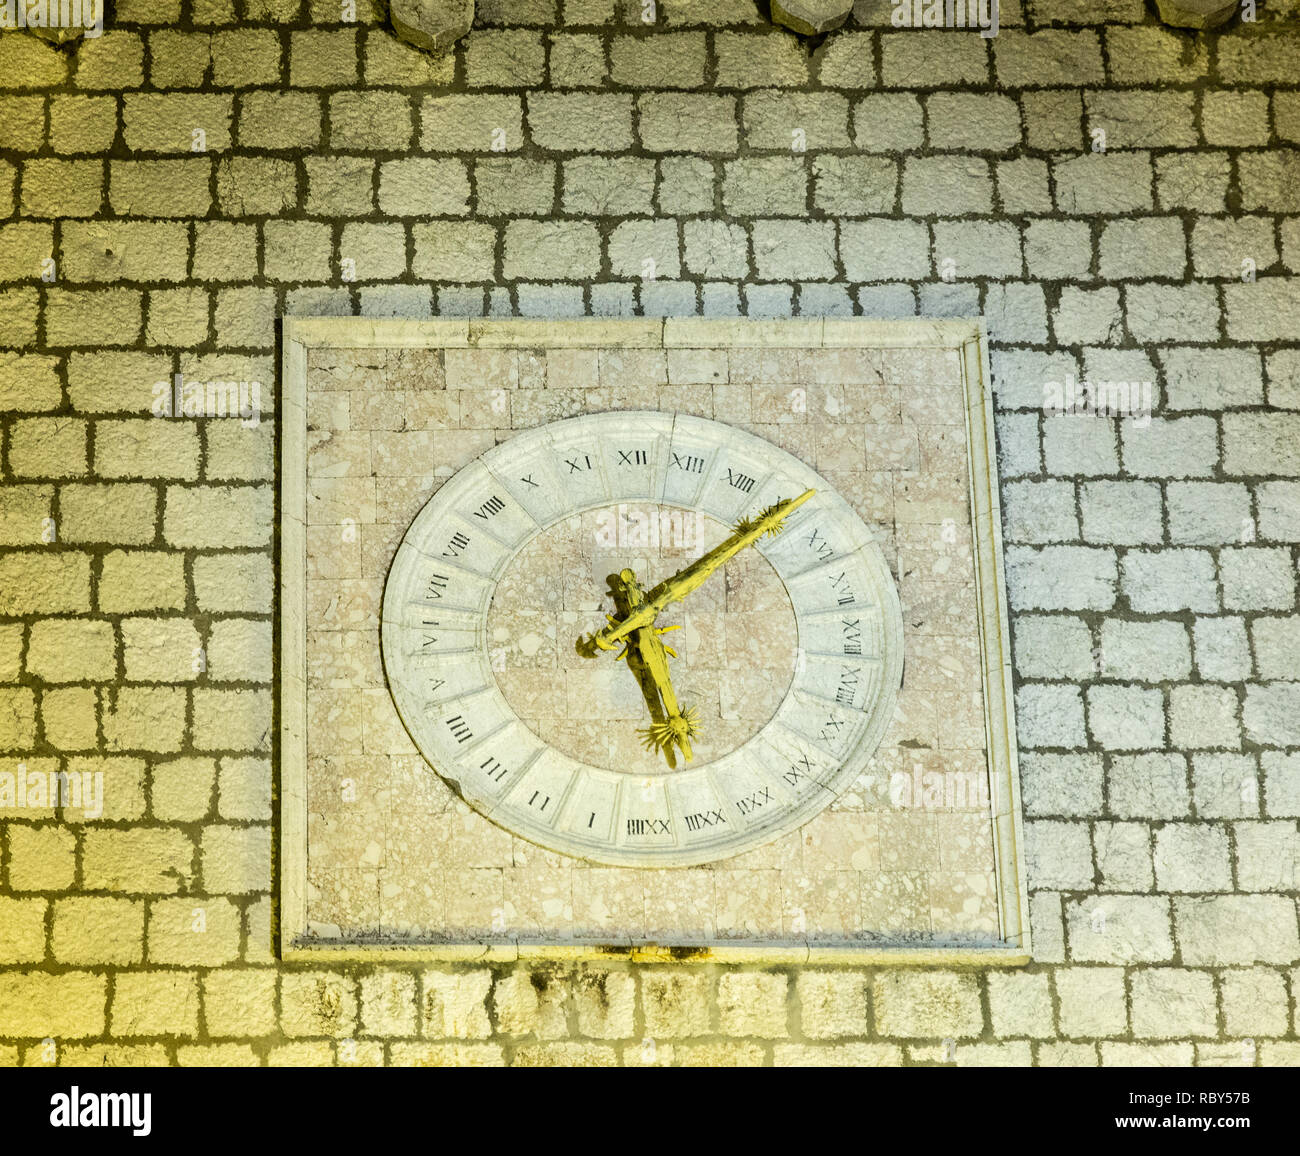 L'horloge du 16ème siècle avec des mains d'or et en chiffres romains sur le mur de pierre de l'hôtel de ville la nuit. Krk, Croatie Banque D'Images